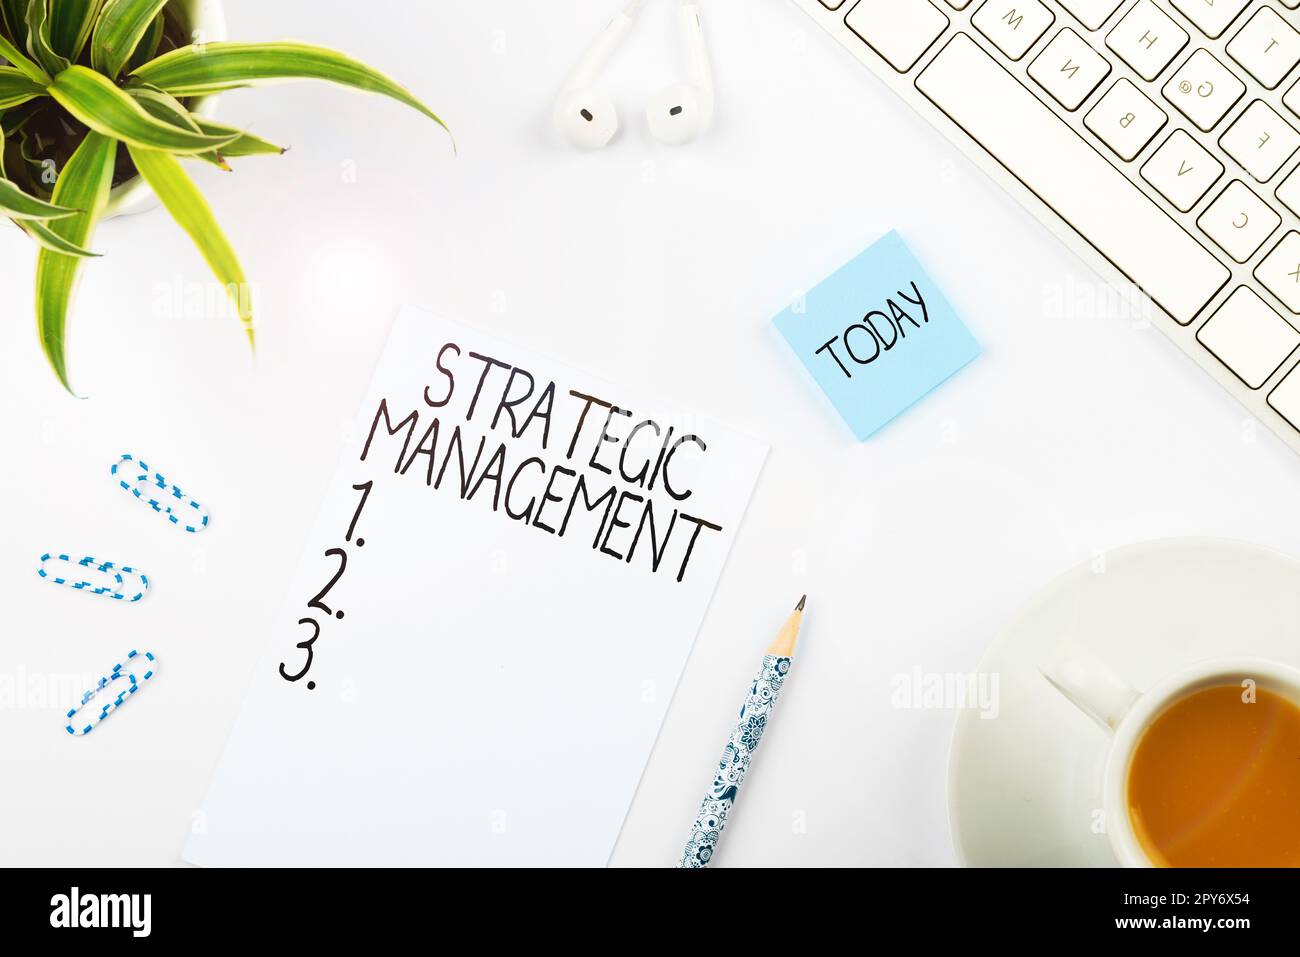 Cartellone che mostra la gestione strategica. Formulazione del concetto di business e implementazione degli obiettivi principali Foto Stock